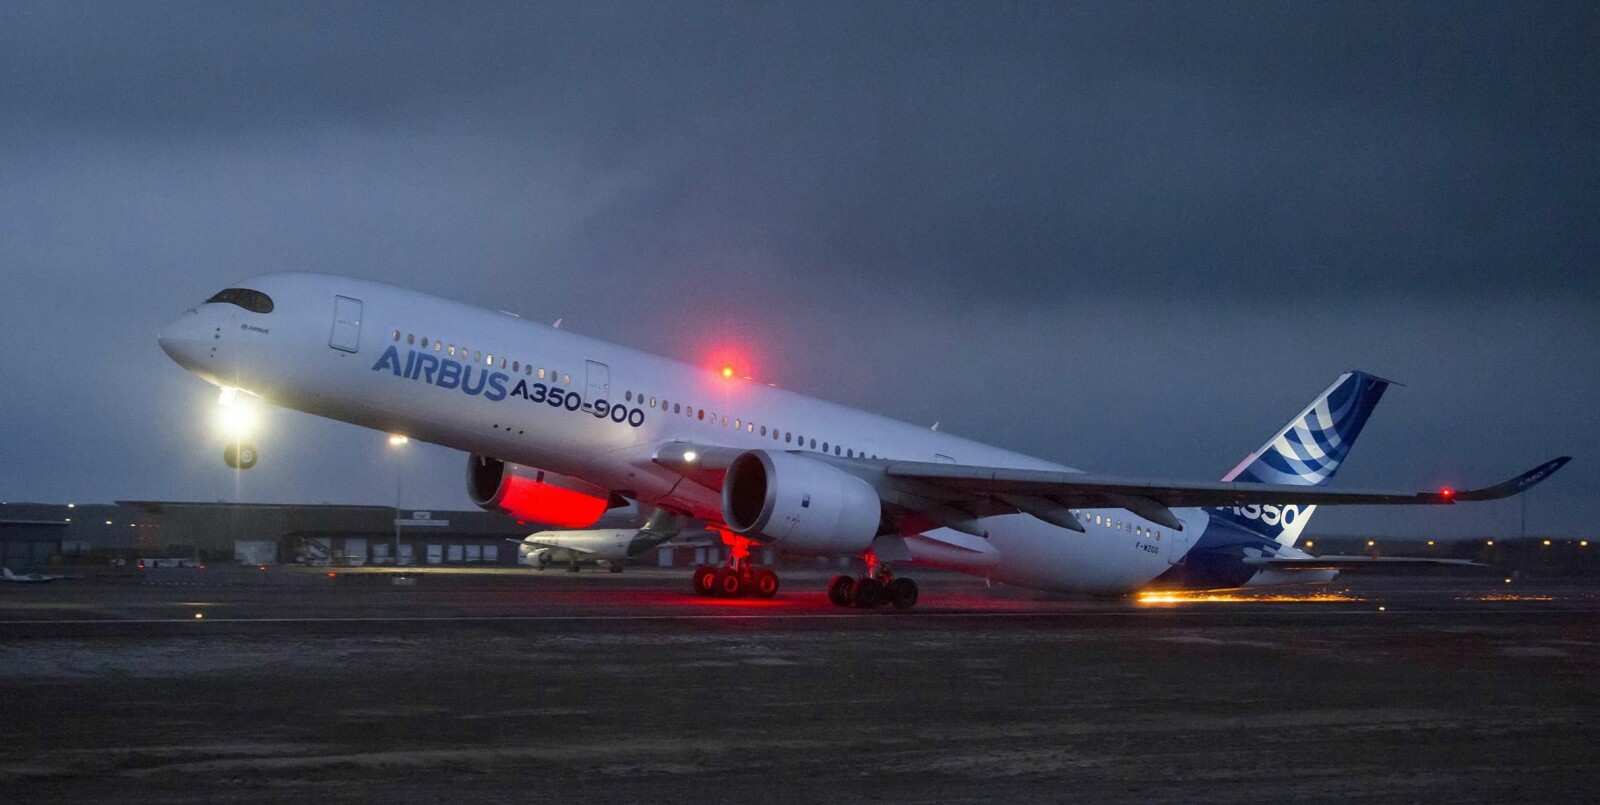 <b>GNISTREGN:</b> Når halen skraper langs asfalten i 250 km/t kan gnistregnet bli spektakulært. Bildet er tatt under en kontrollert tailstrike-test med prototypen til Airbus A350.